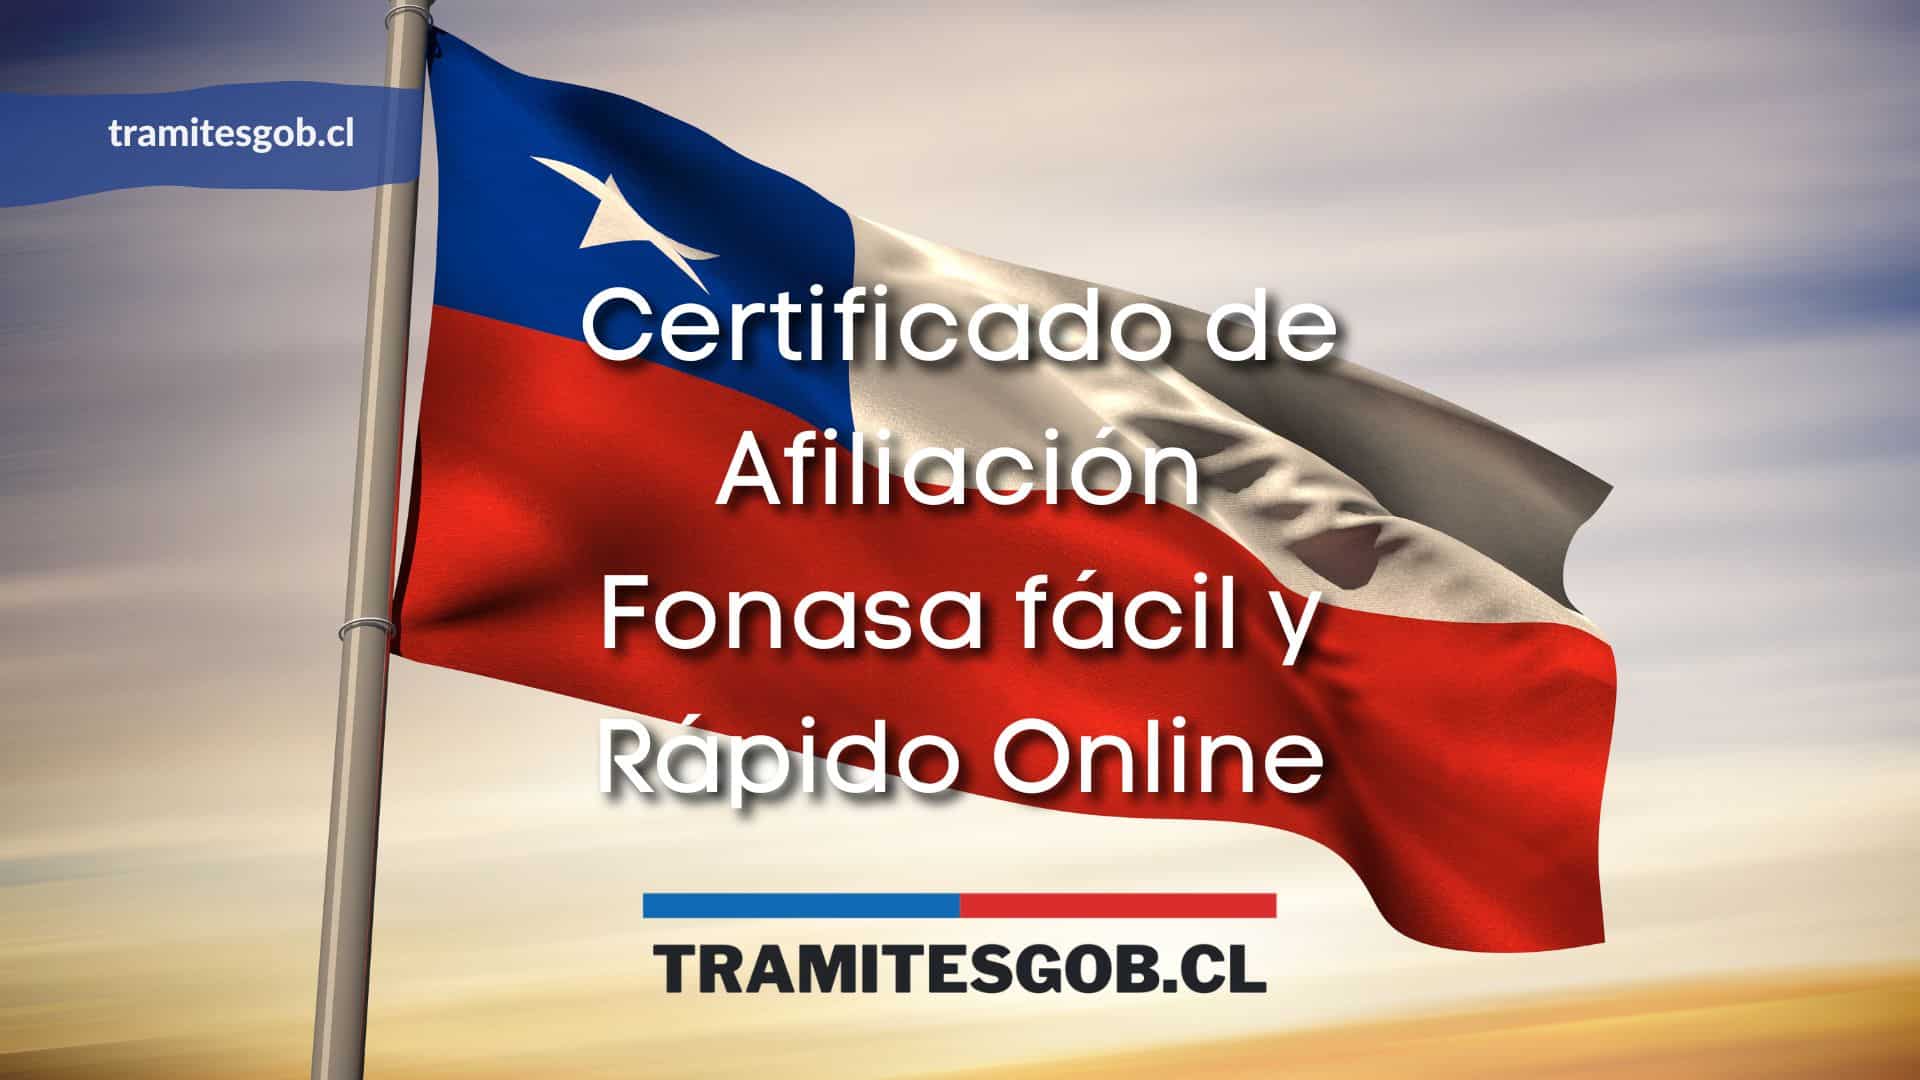 Certificado de Afiliación Fonasa fácil y Rápido Online